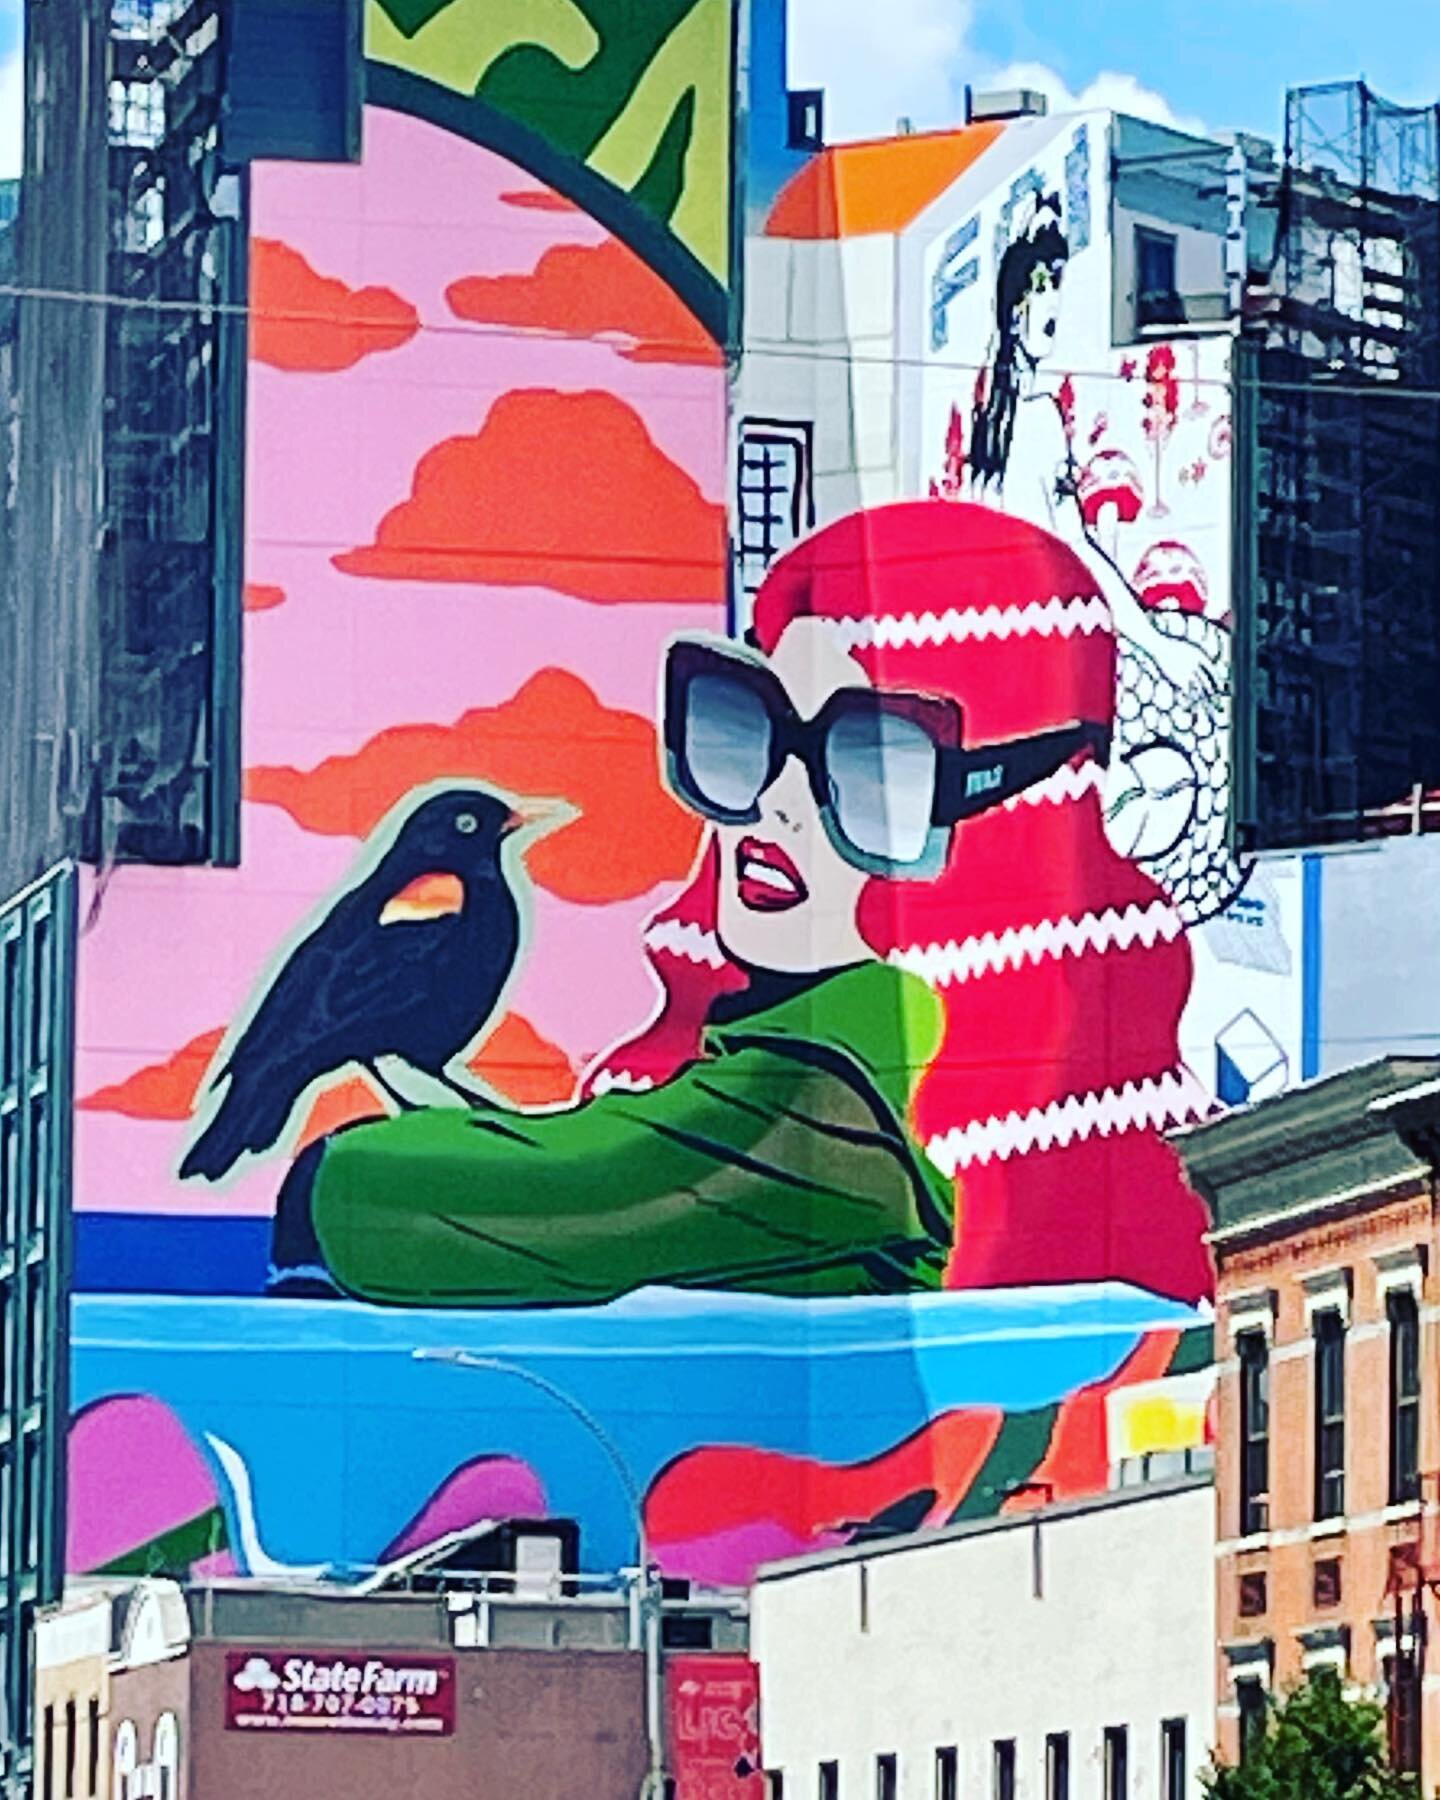 Yeah chilling with my bird #murals #queens